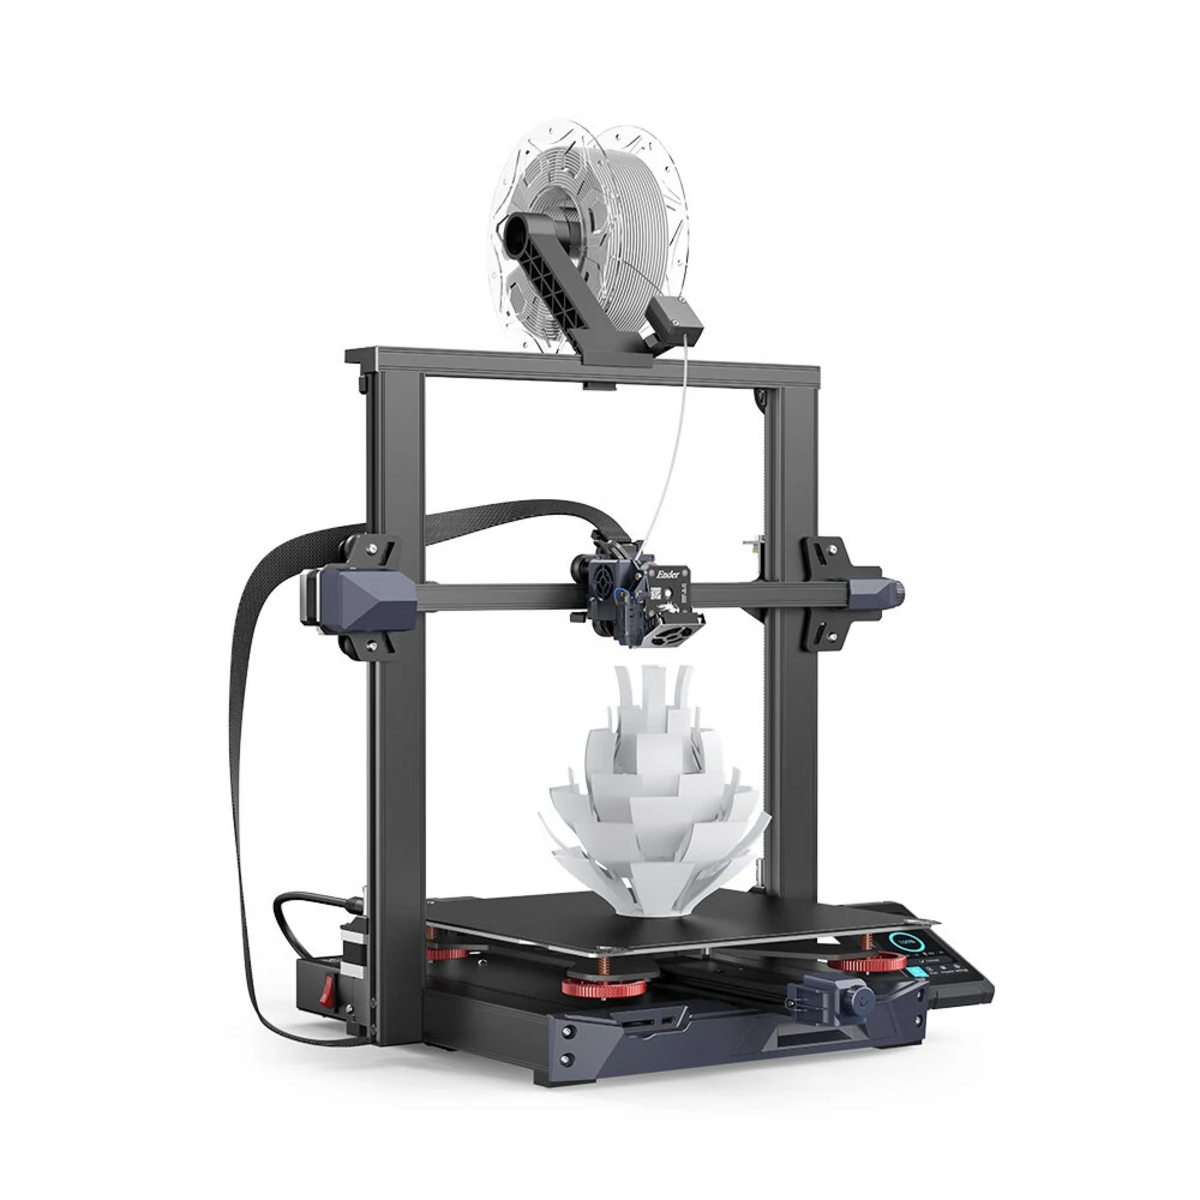 CREALITY Ender 3 S1 Drucker FDM 3D-printer Plus - 3D